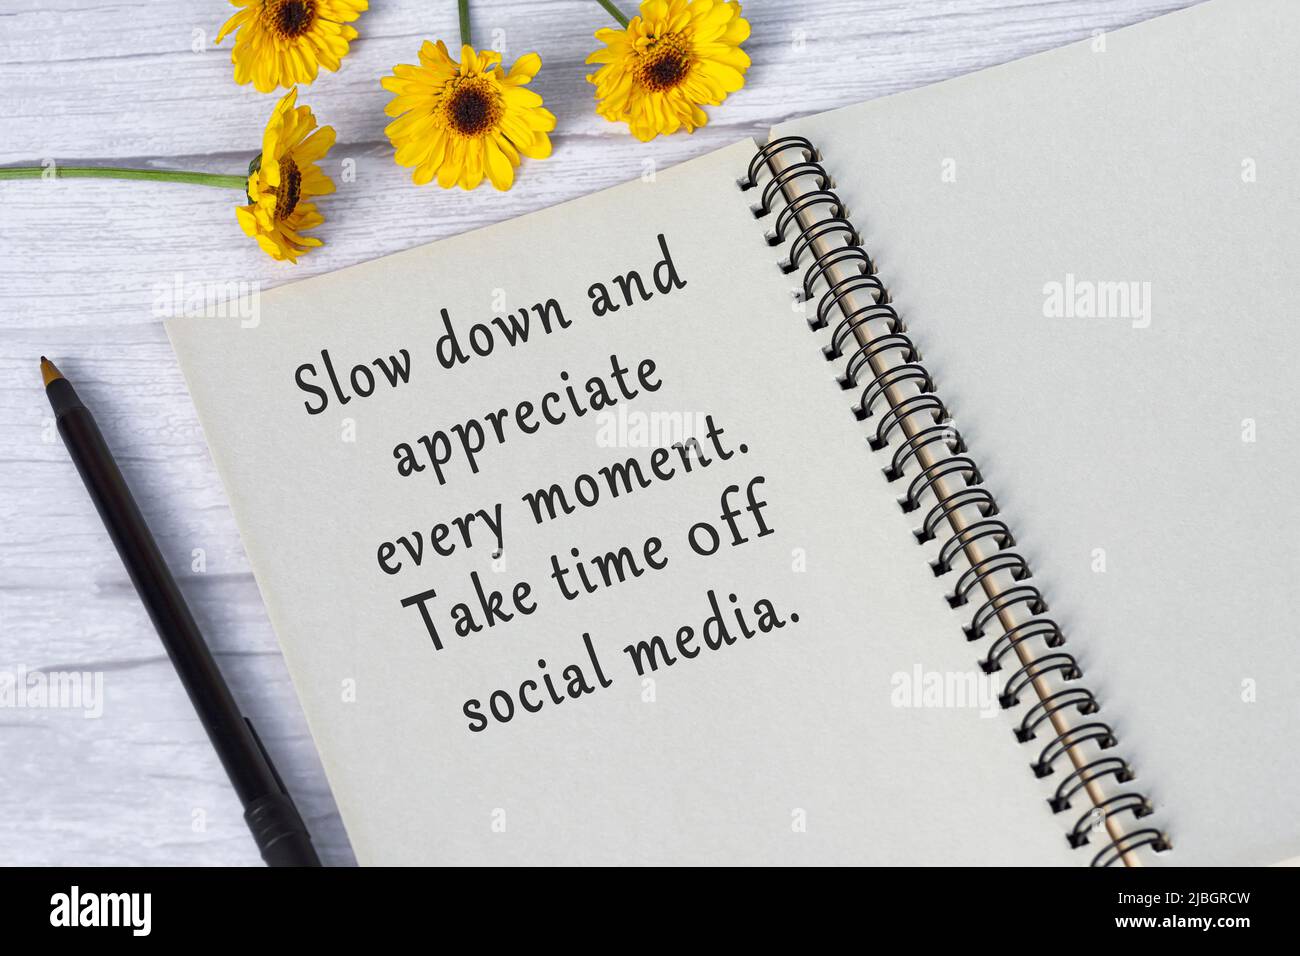 Motivationszitat auf Notizbuch mit Sonnenblumen auf Holzschreibtisch - verlangsamen und schätzen Sie jeden Moment, nehmen Sie sich Zeit von den sozialen Medien. Stockfoto